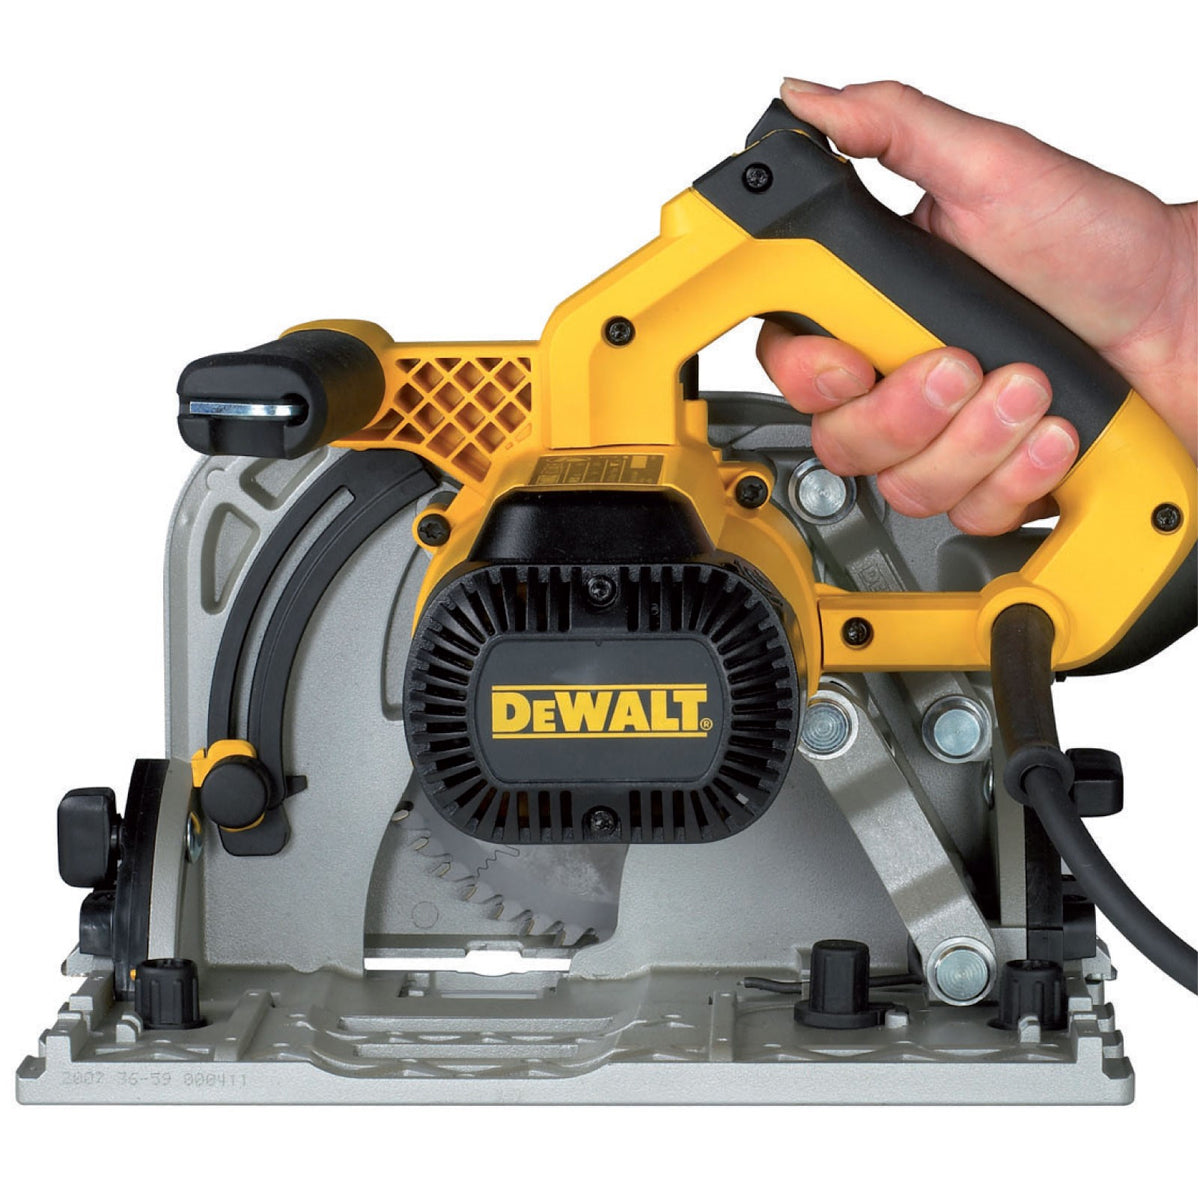 Dewalt DWS520KTL 165mm Plunge Saw 1300W 110V - No Guide Rail Item Condition Seller Refurbished